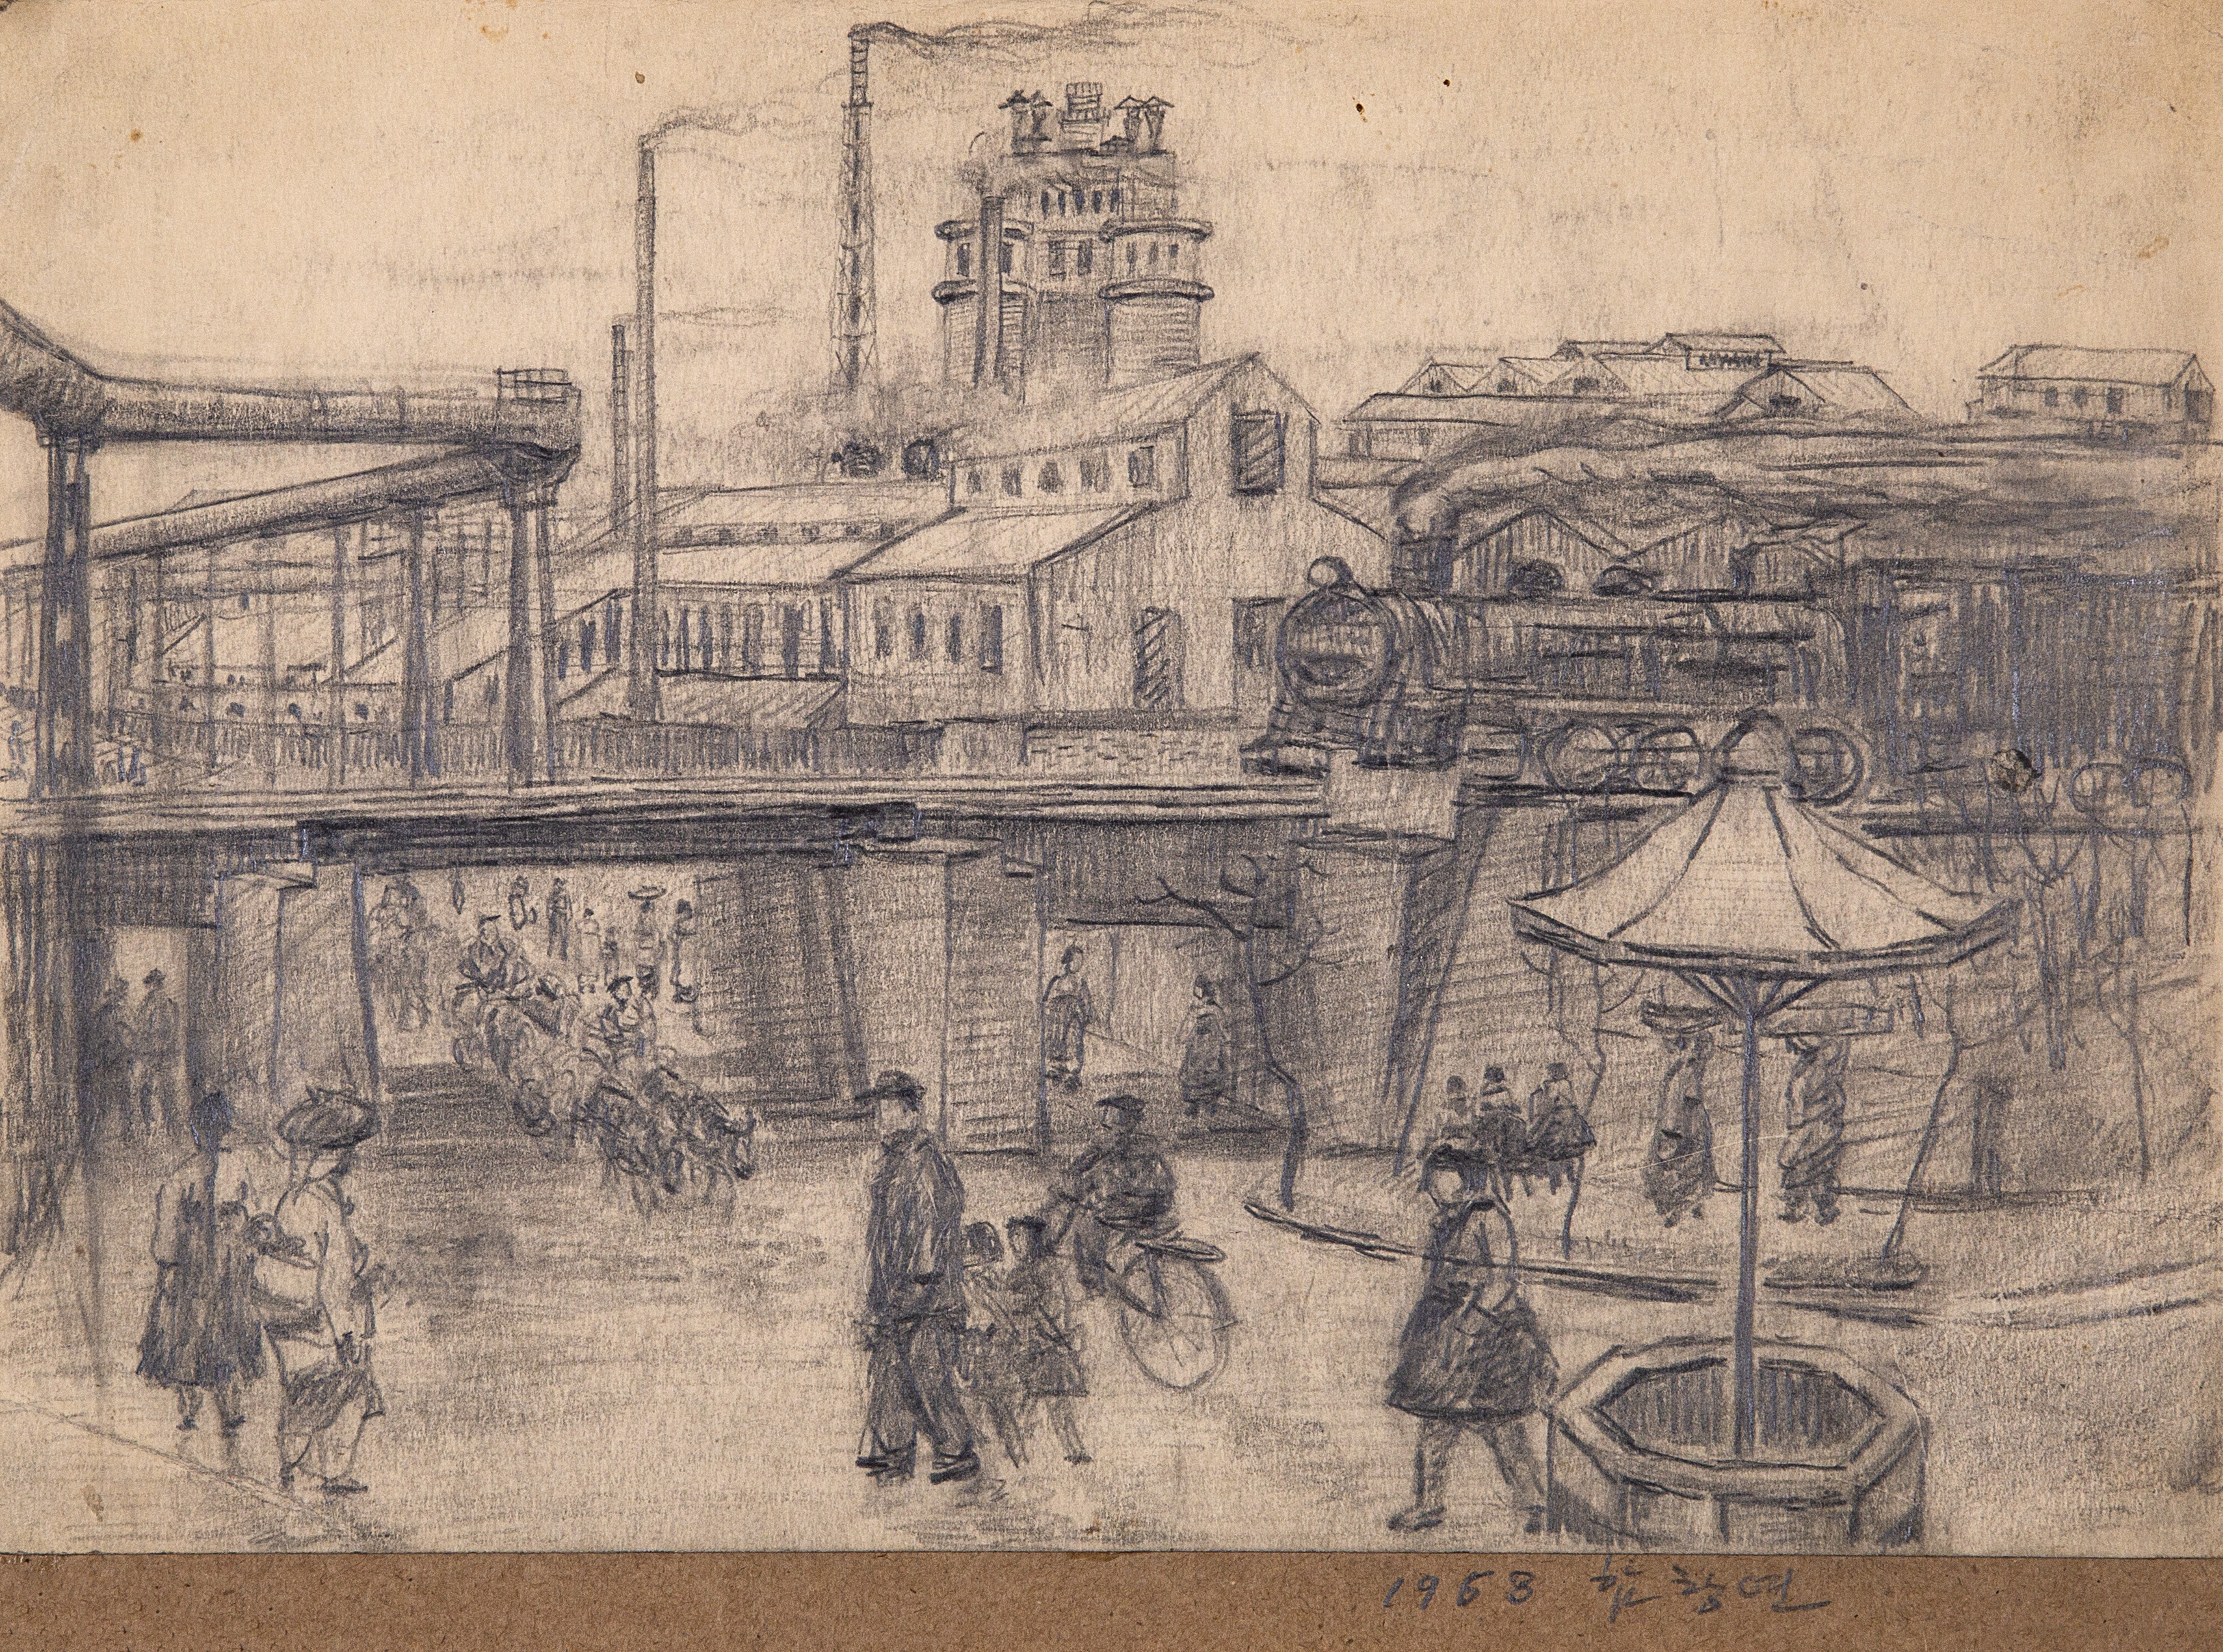 【朝鲜铅笔画】咸昌渊 平壤街景 1968年 30 x 20.5cm